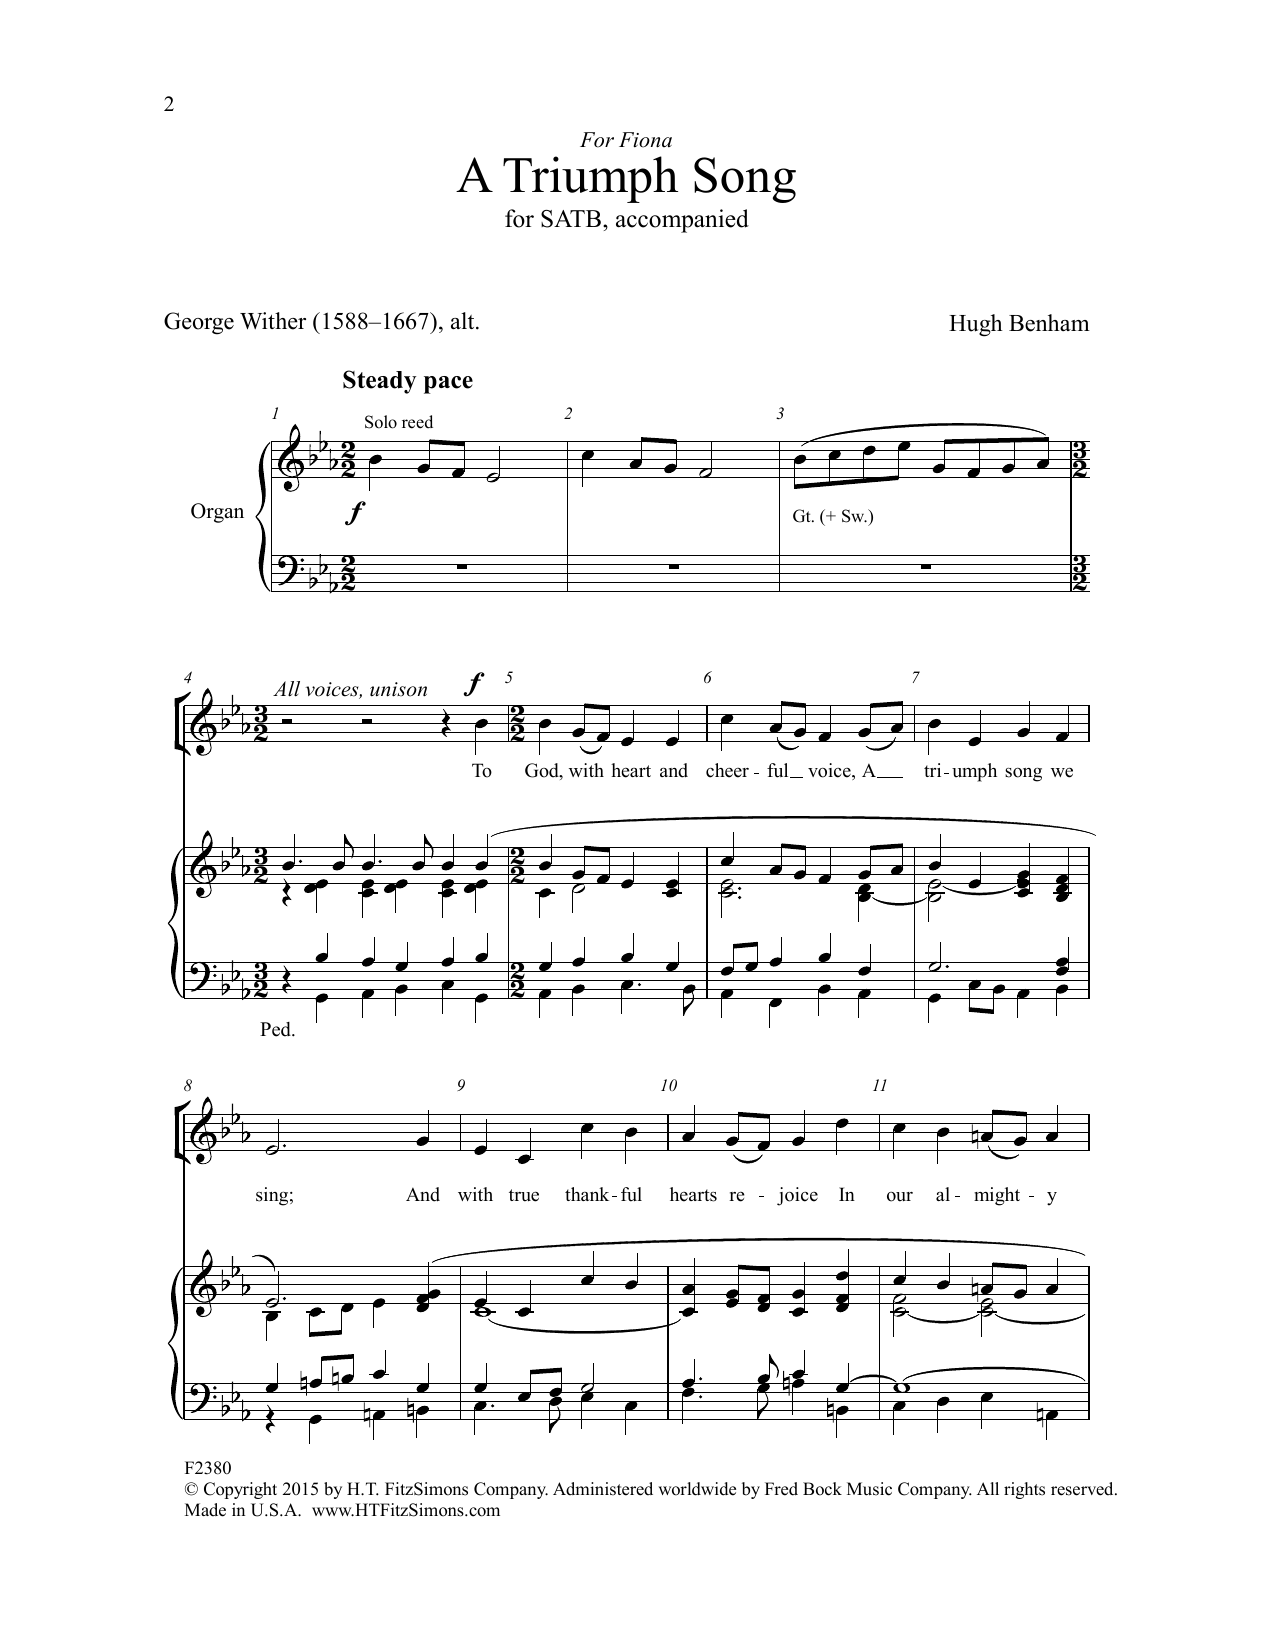 Hugh Benham A Triumph Song Sheet Music Notes & Chords for SATB Choir - Download or Print PDF